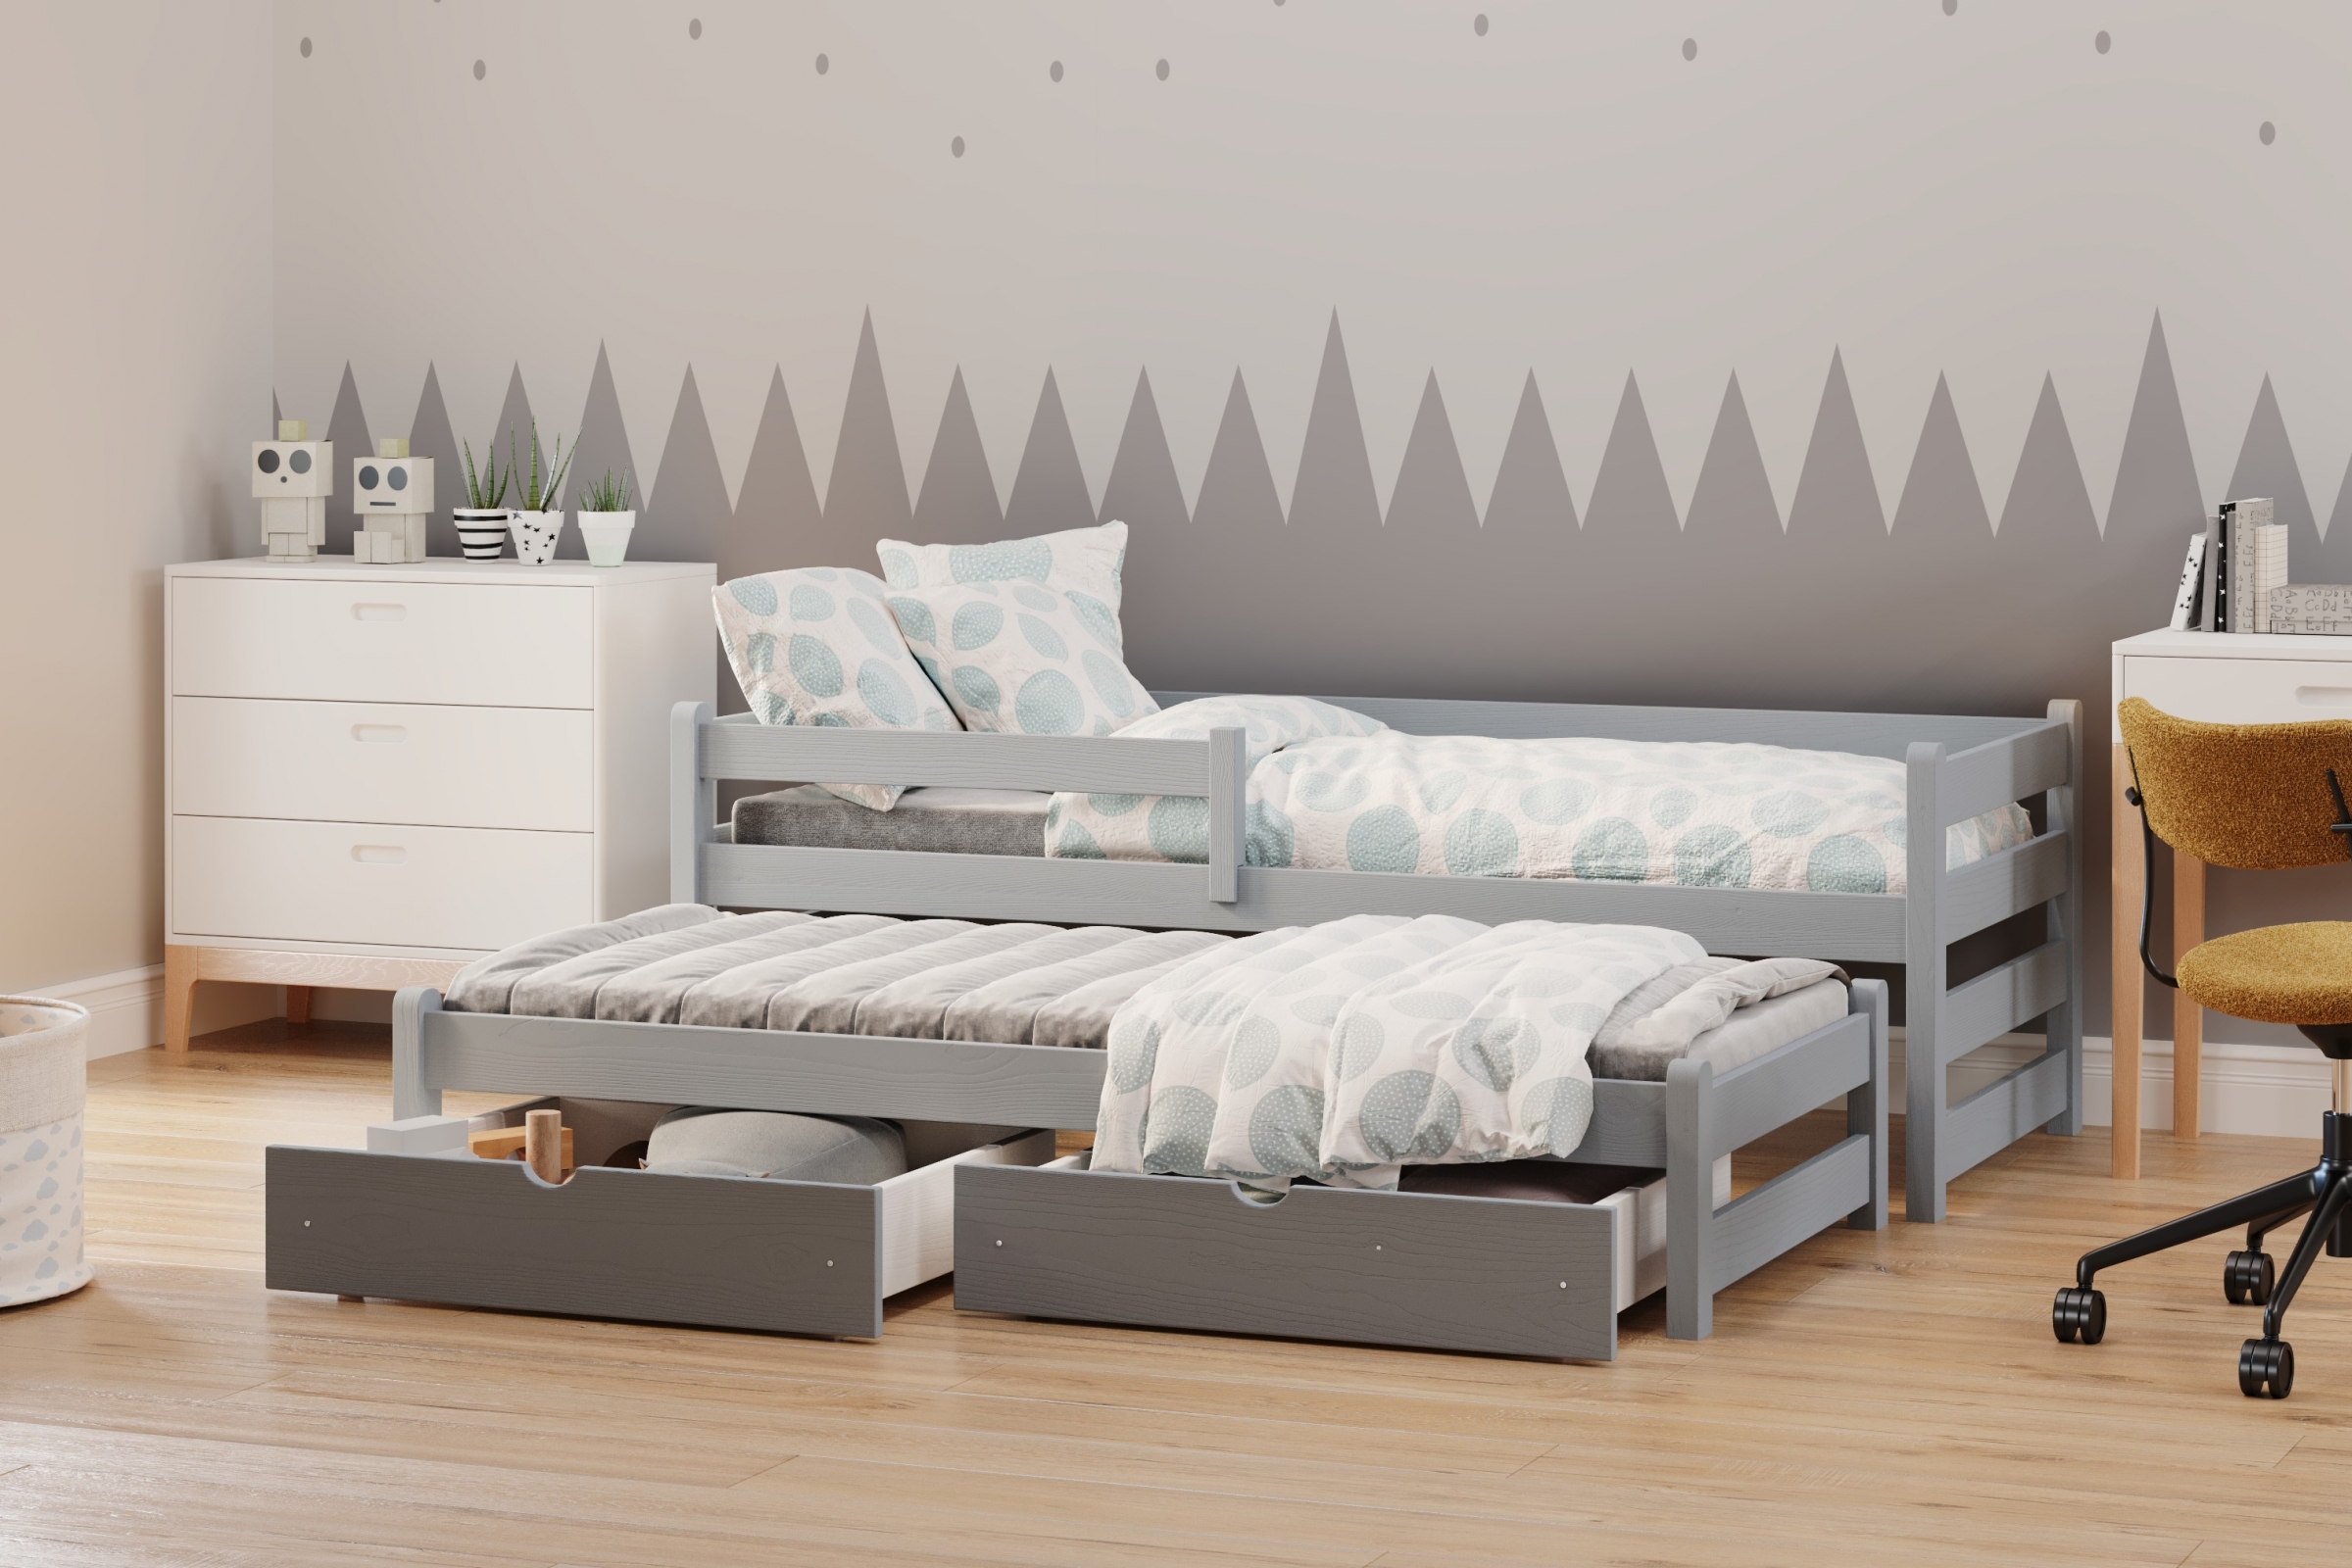 postel dětské přízemní výsuvná Alis DPV 001 - šedý, 80x180 postel přízemní výsuvná Alis - Barva šedý - aranzacja